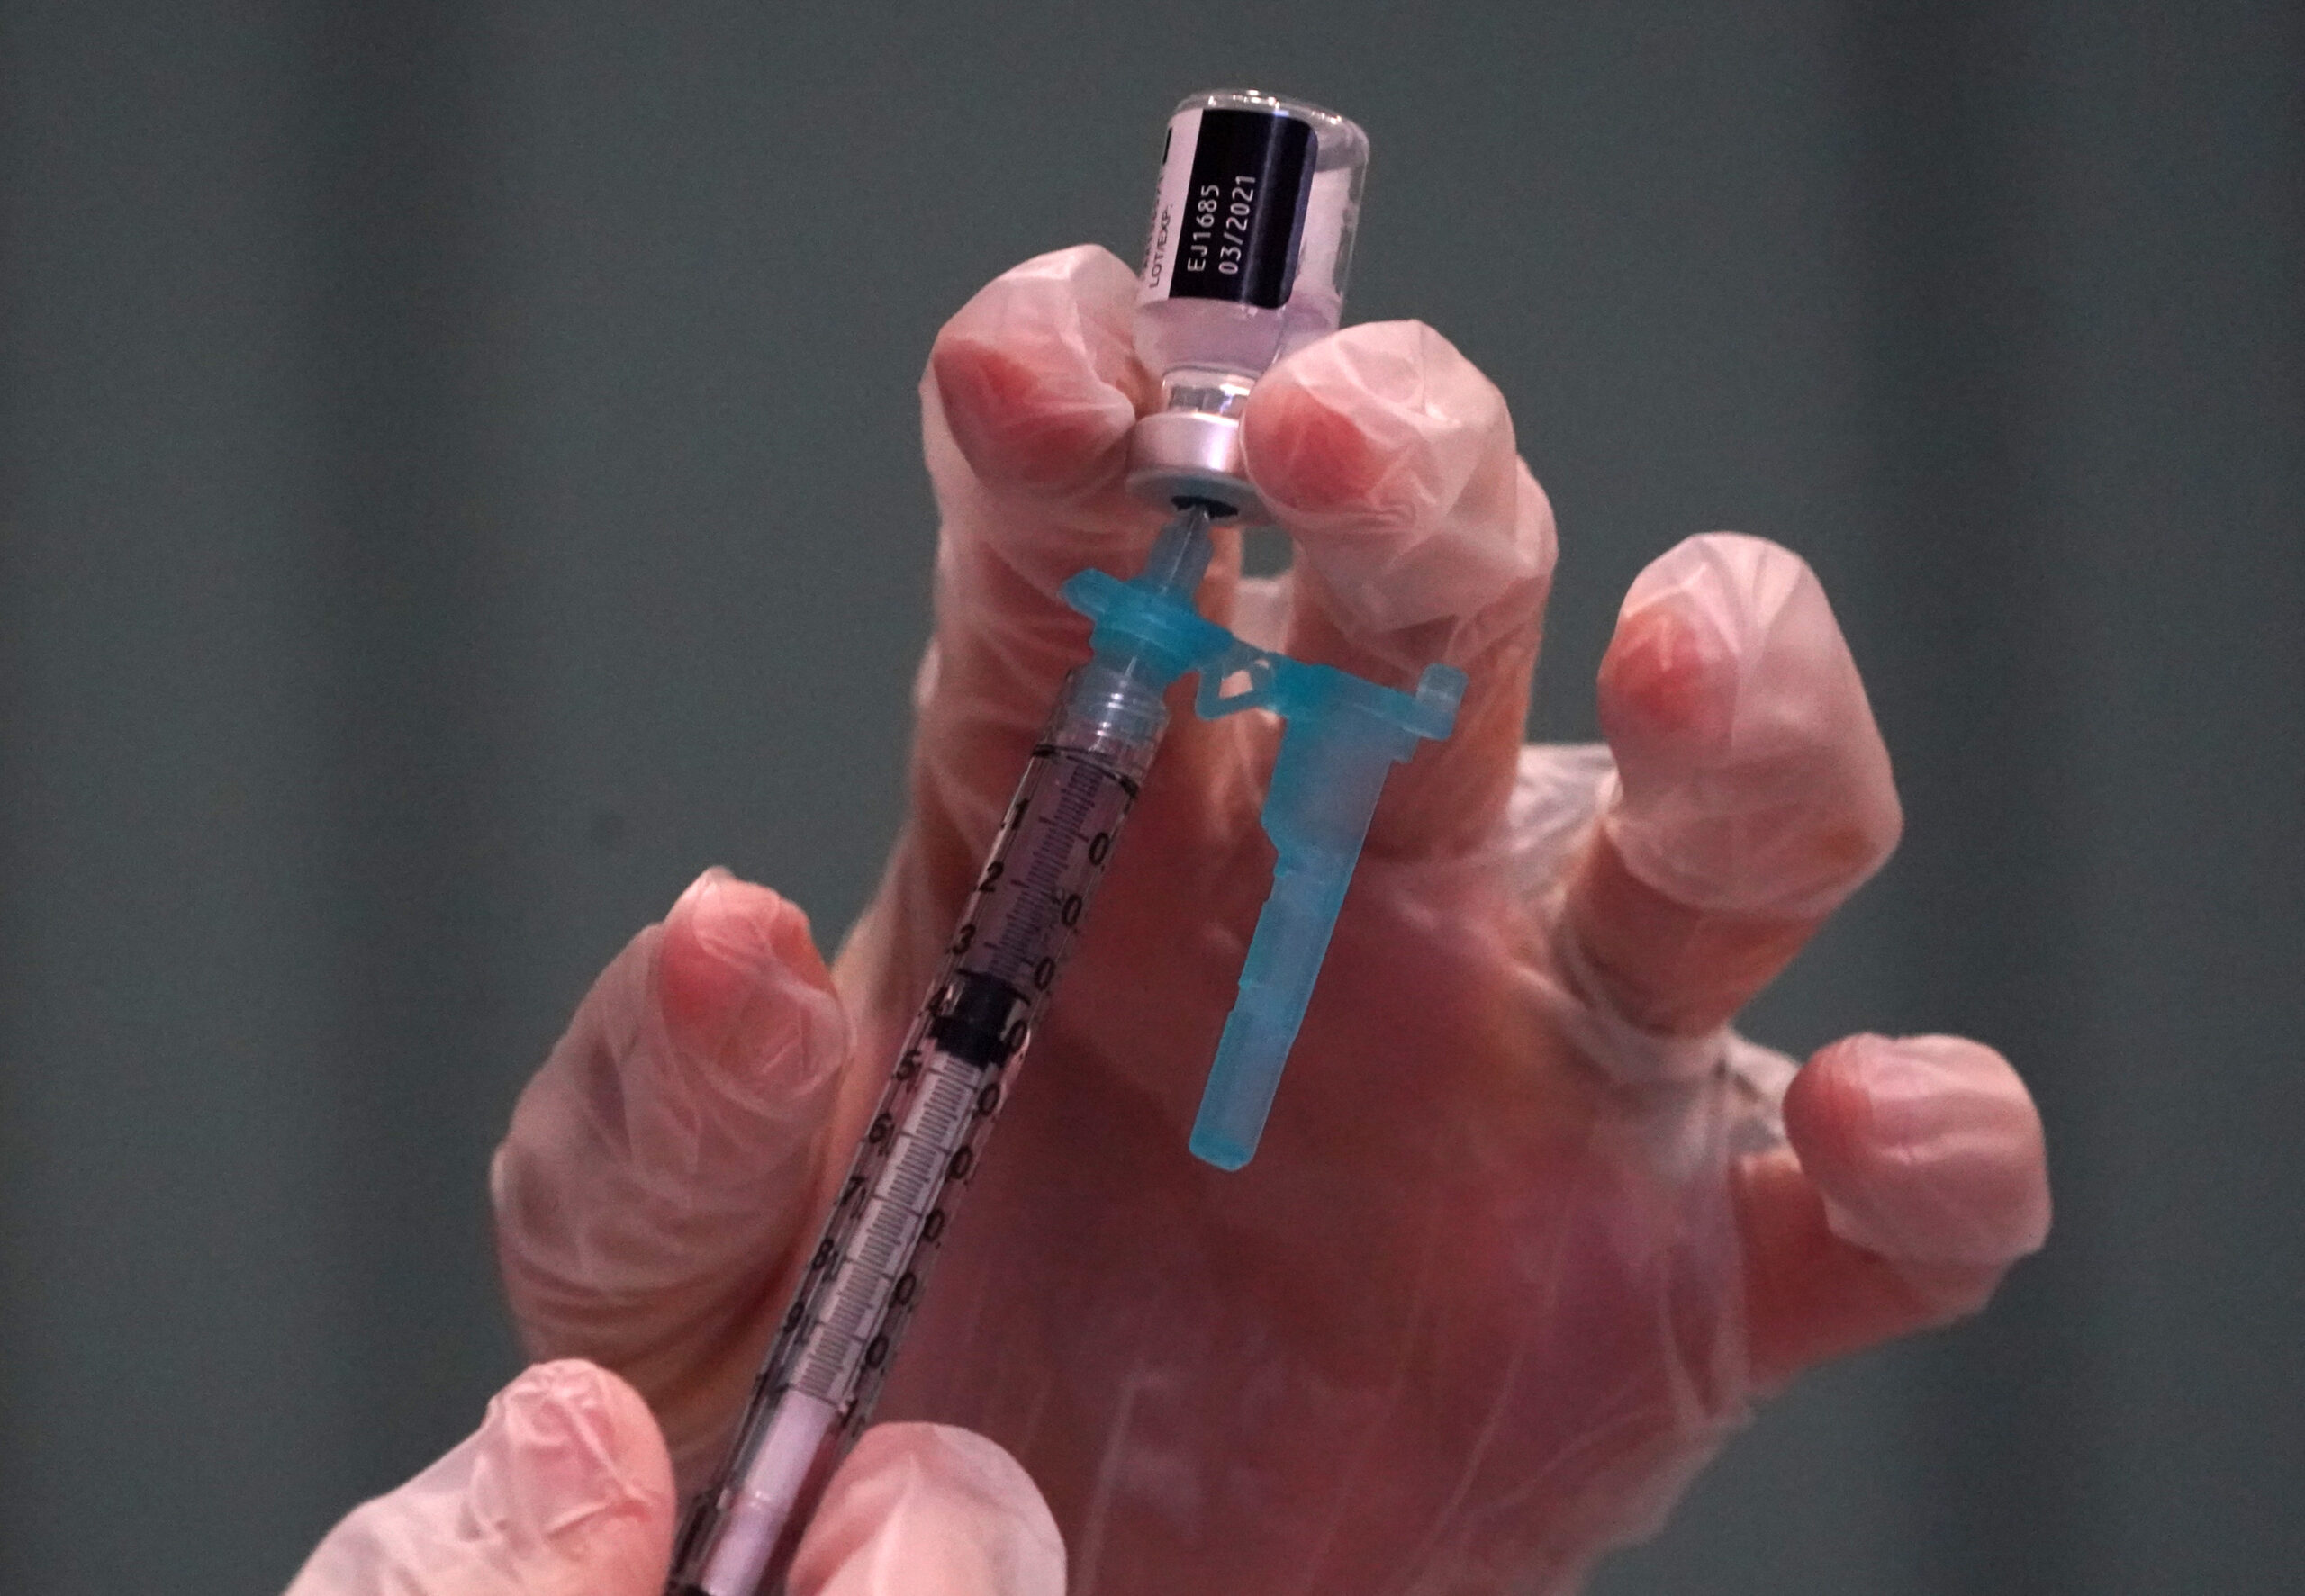 Salud informa que vacunados con Sinopharm tienen segundas dosis aseguradas